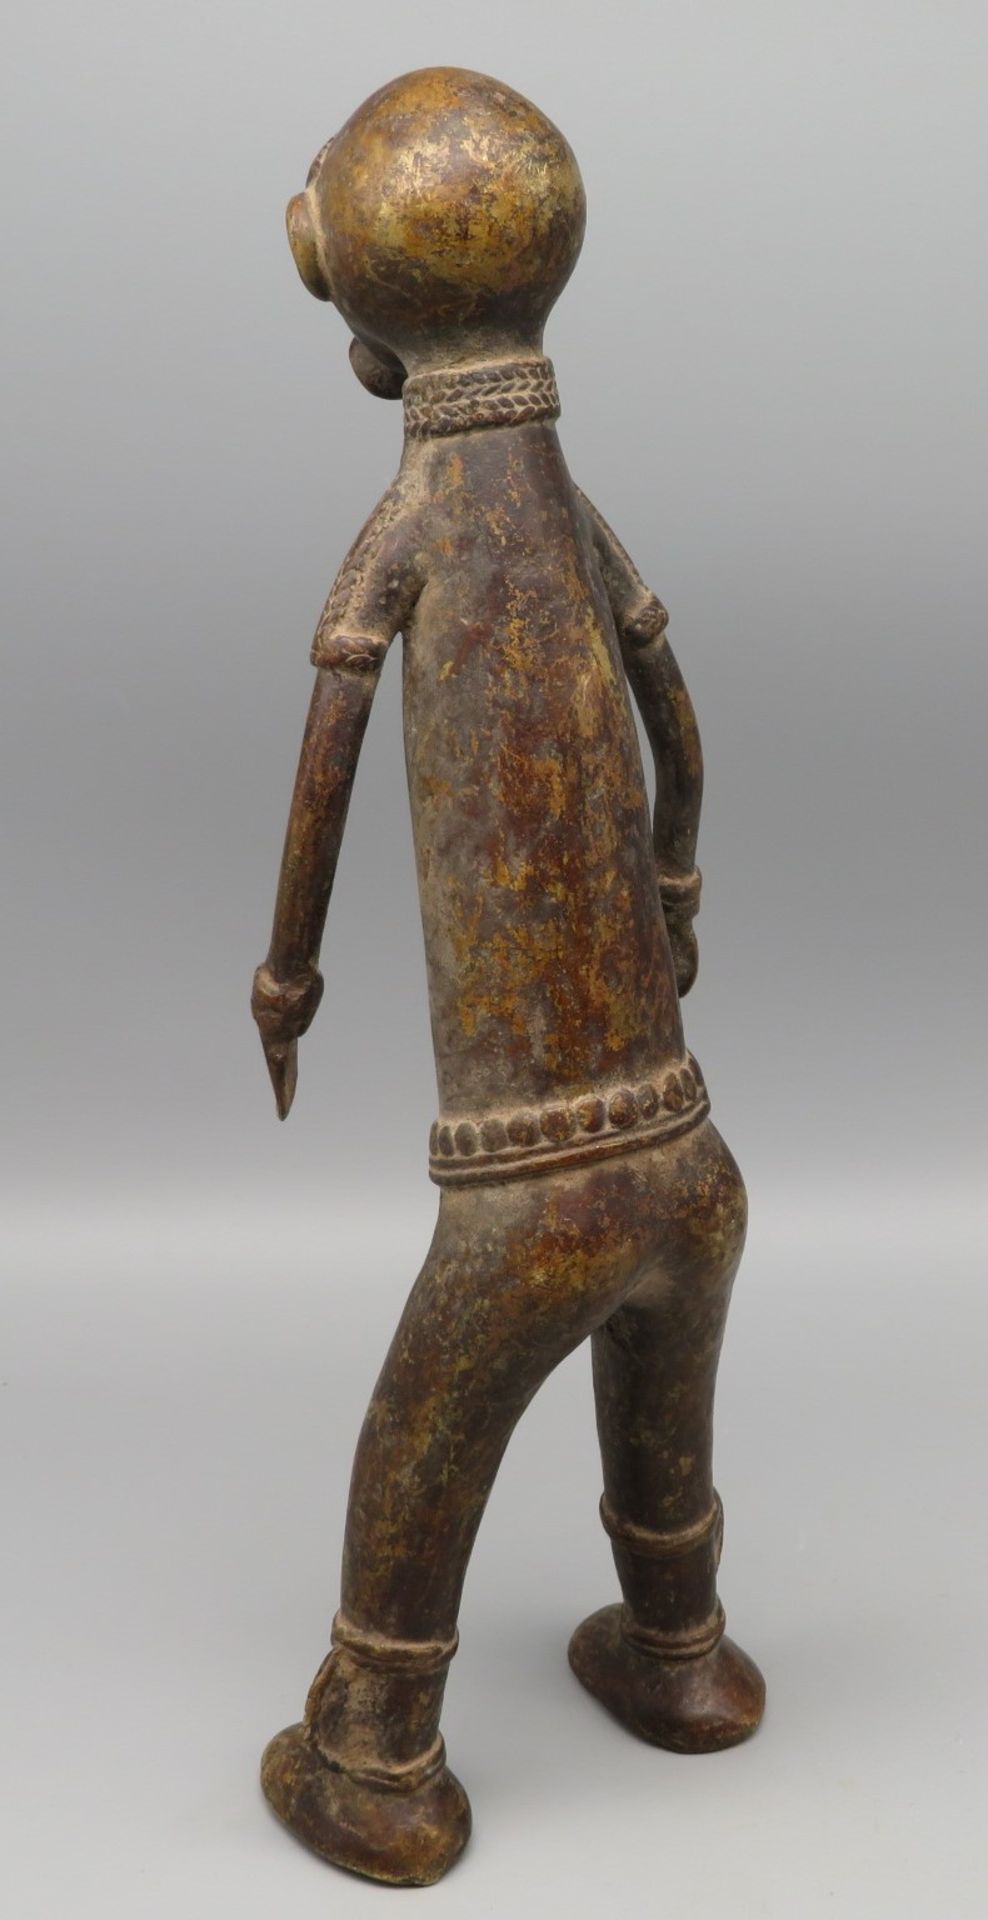 Männliche Ahnenfigur, Afrika, Nigeria, Vere, antik, Bronze, 32,5 x 11 x 7 cm. - Image 2 of 2